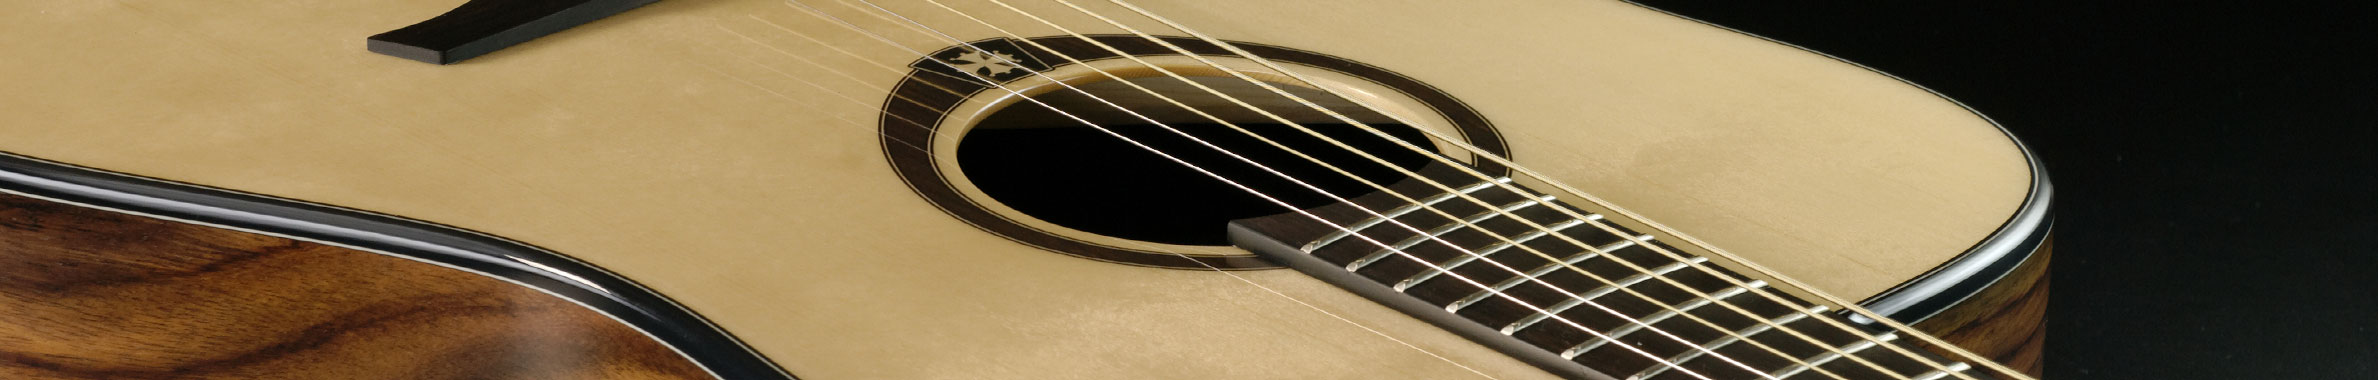 Comment choisir un ampli de guitare pour débutant - Guide d'achat : Guitare